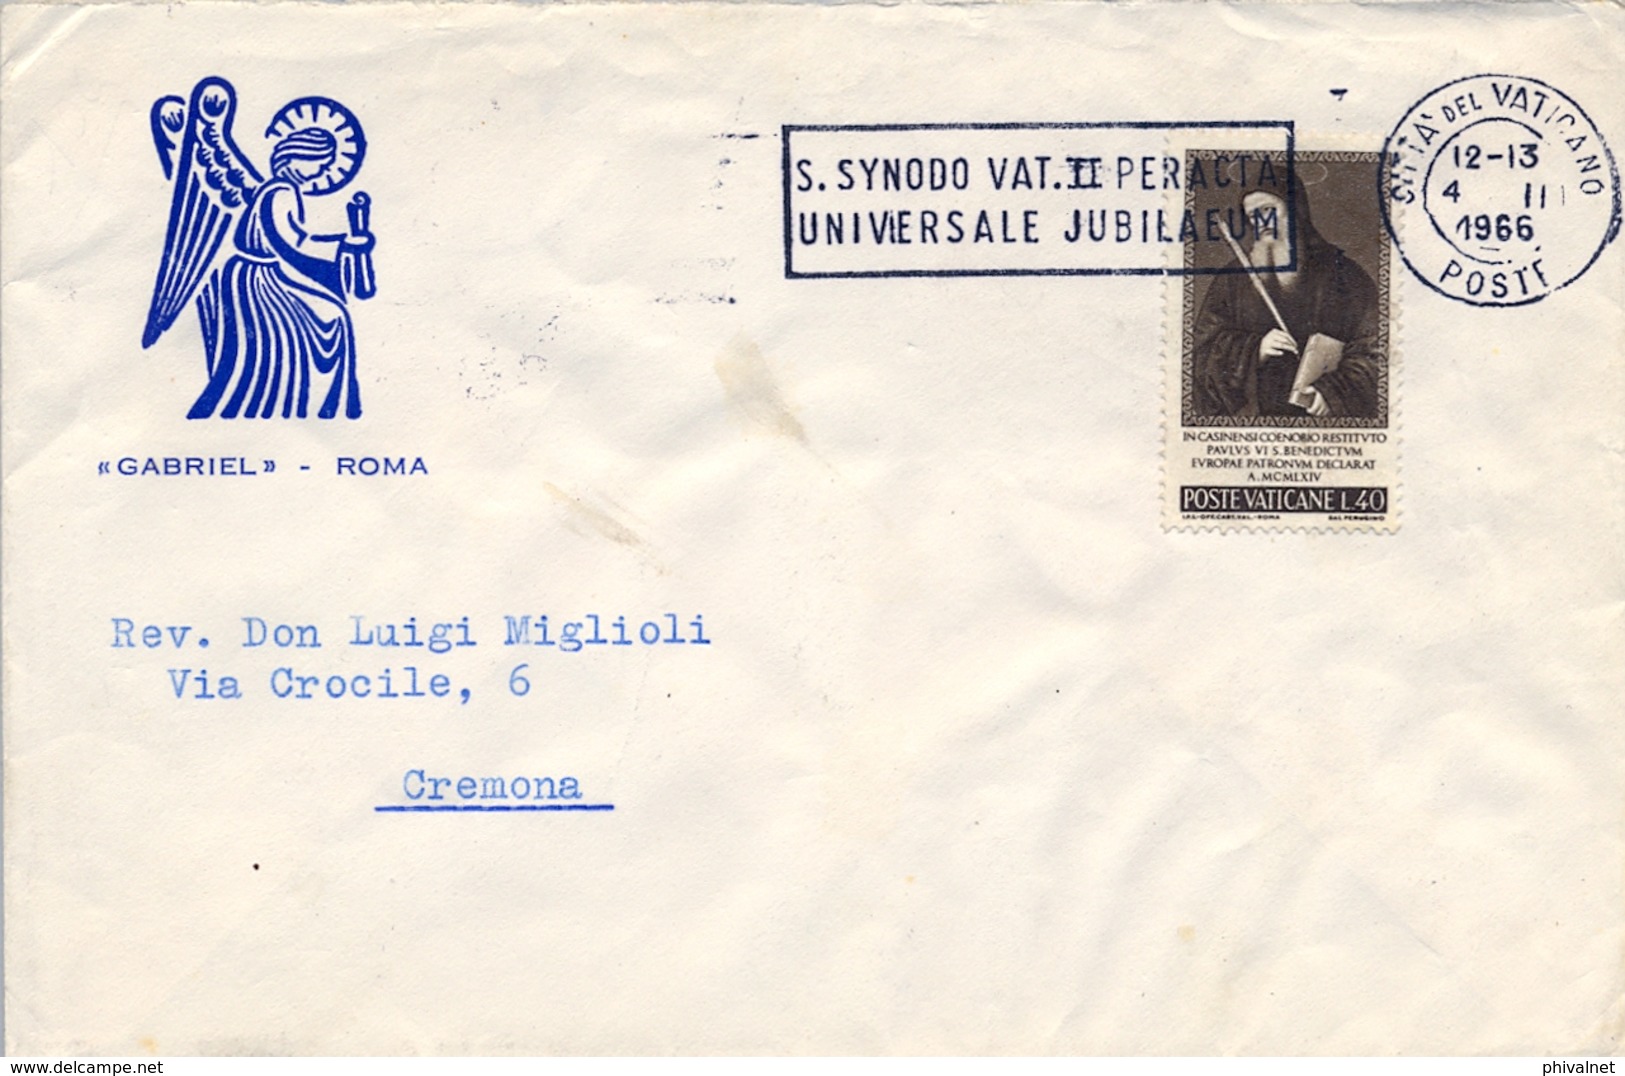 1966 , VATICANO , SOBRE CIRCULADO A CREMONA , JUBILEO UNIVERSAL , SINODO VATICANO II - Cartas & Documentos